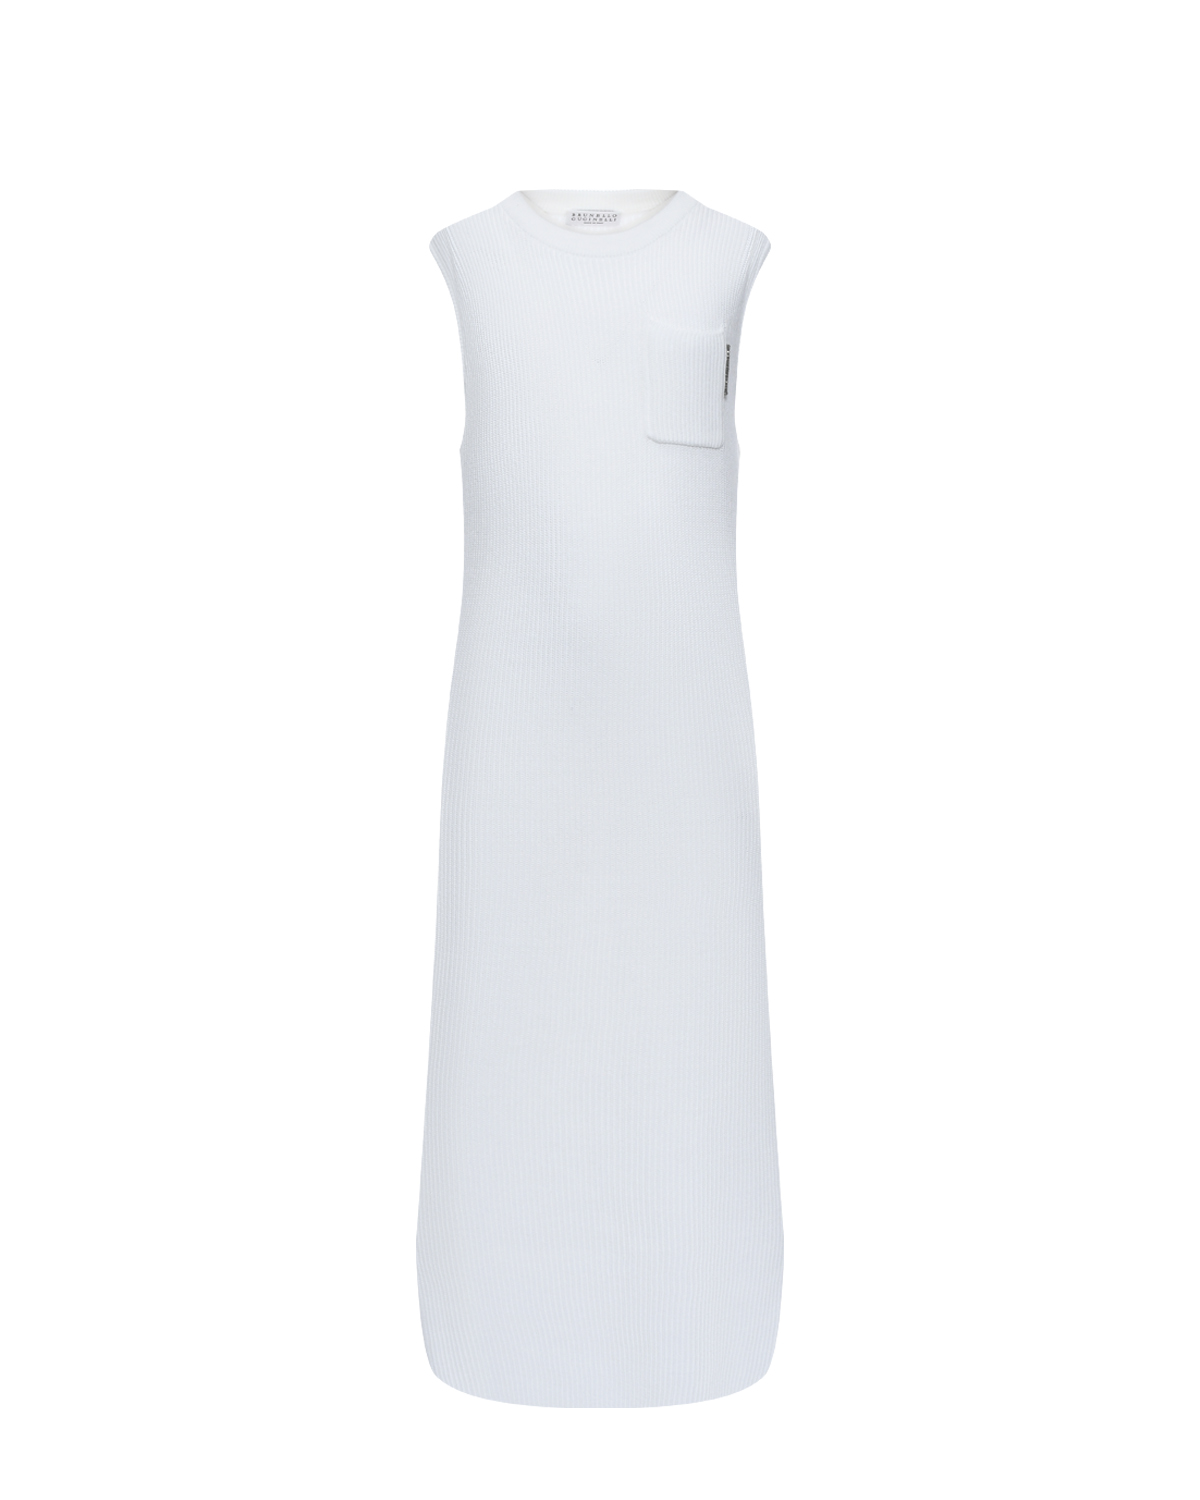 Вязаное белое платье Brunello Cucinelli вязаное платье длины миди на бретелях